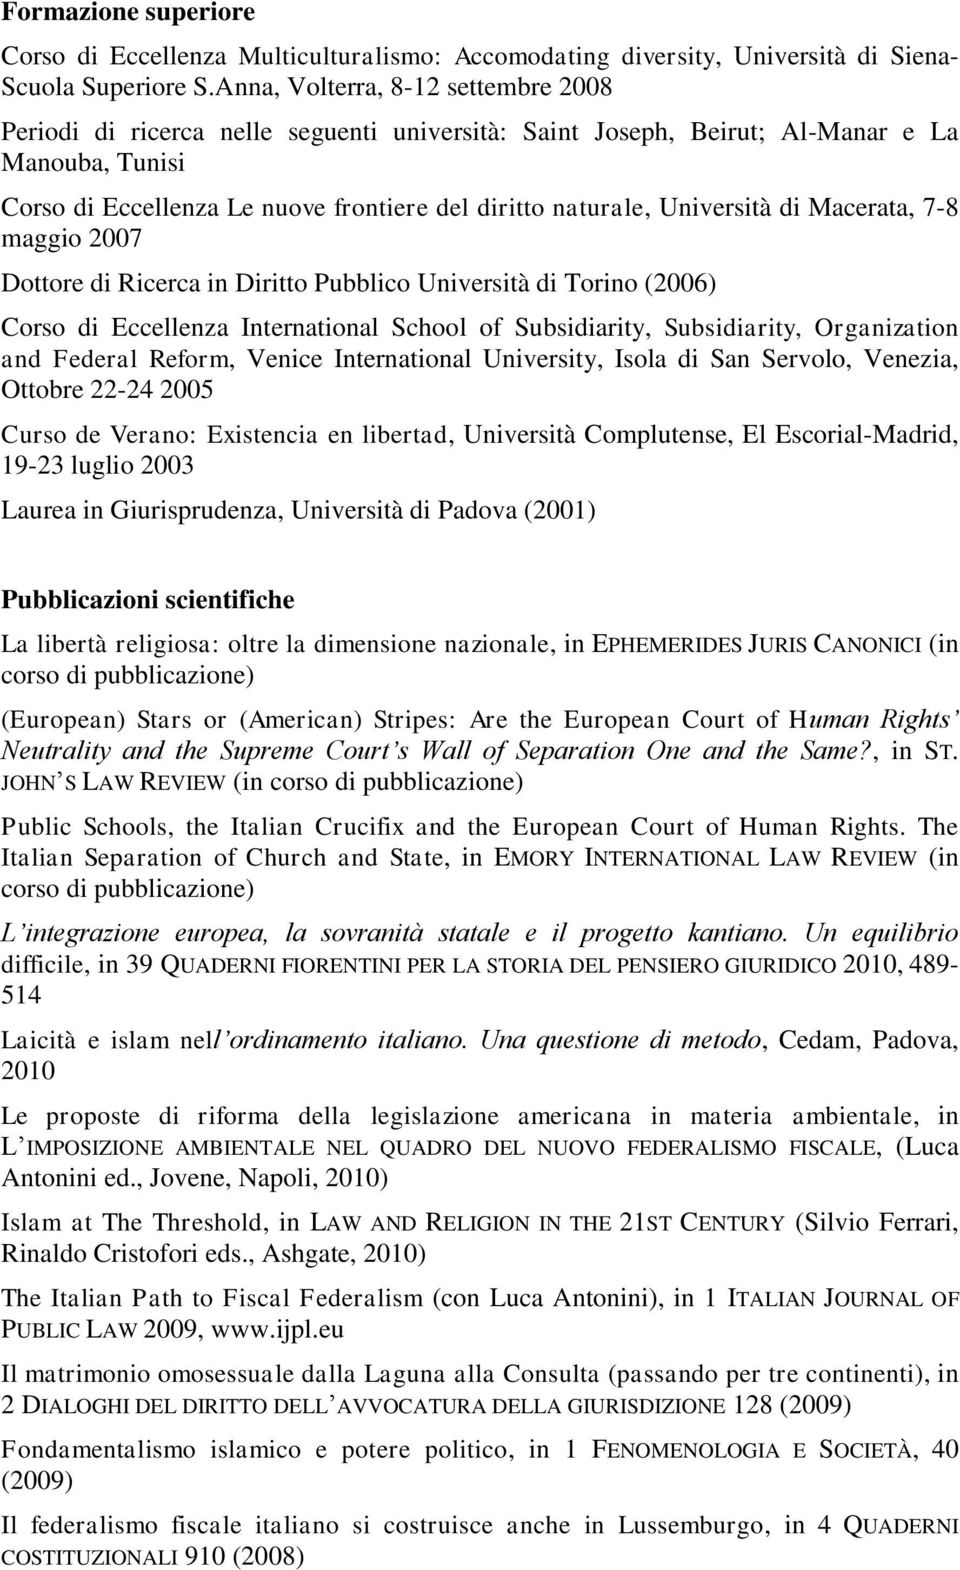 Università di Macerata, 7-8 maggio 2007 Dottore di Ricerca in Diritto Pubblico Università di Torino (2006) Corso di Eccellenza International School of Subsidiarity, Subsidiarity, Organization and